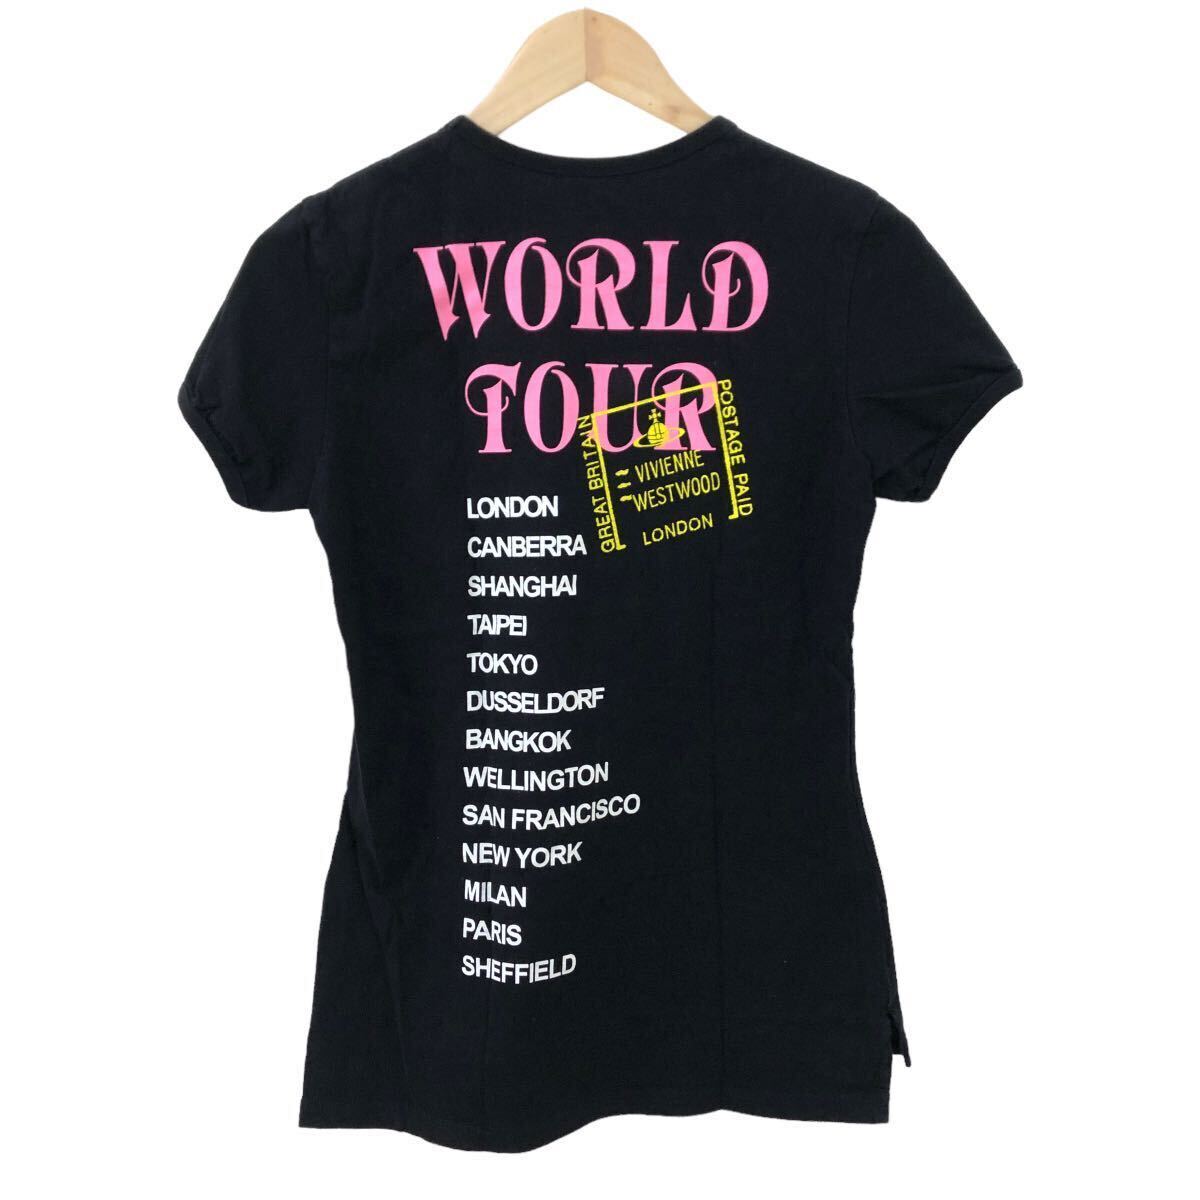 m514-73 Vivienne Westwood WORLD TOUR Vivienne Westwood world Tour ограничение короткий рукав футболка tops чёрный красный "губа" рисунок M сделано в Японии 